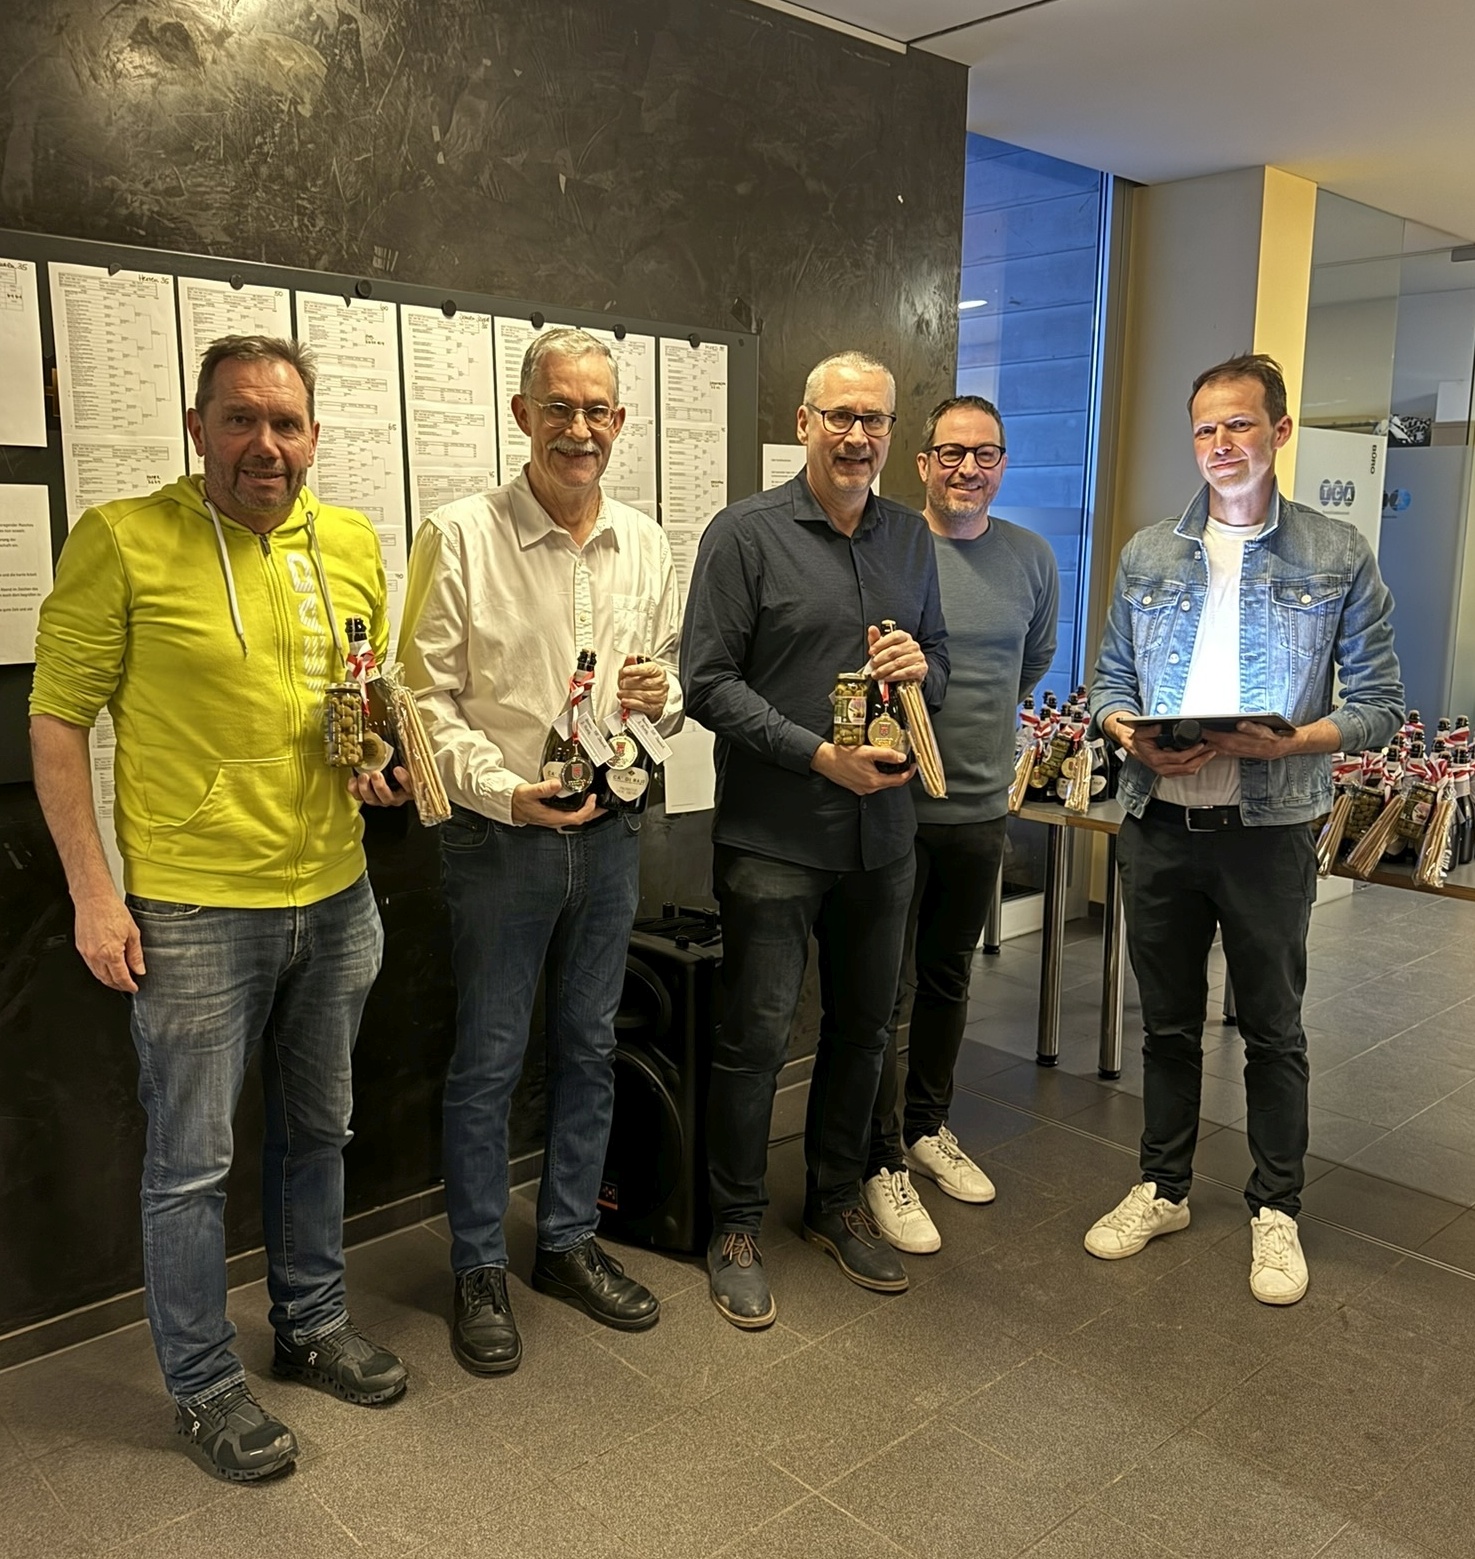 Preisverleihung Finalisten Herren Doppel 55 mit VTV Prsident Wolfgang Hmmerle und TC Altenstadt Prsident Alexander Gsthl - Kurt Bitriol fehlt